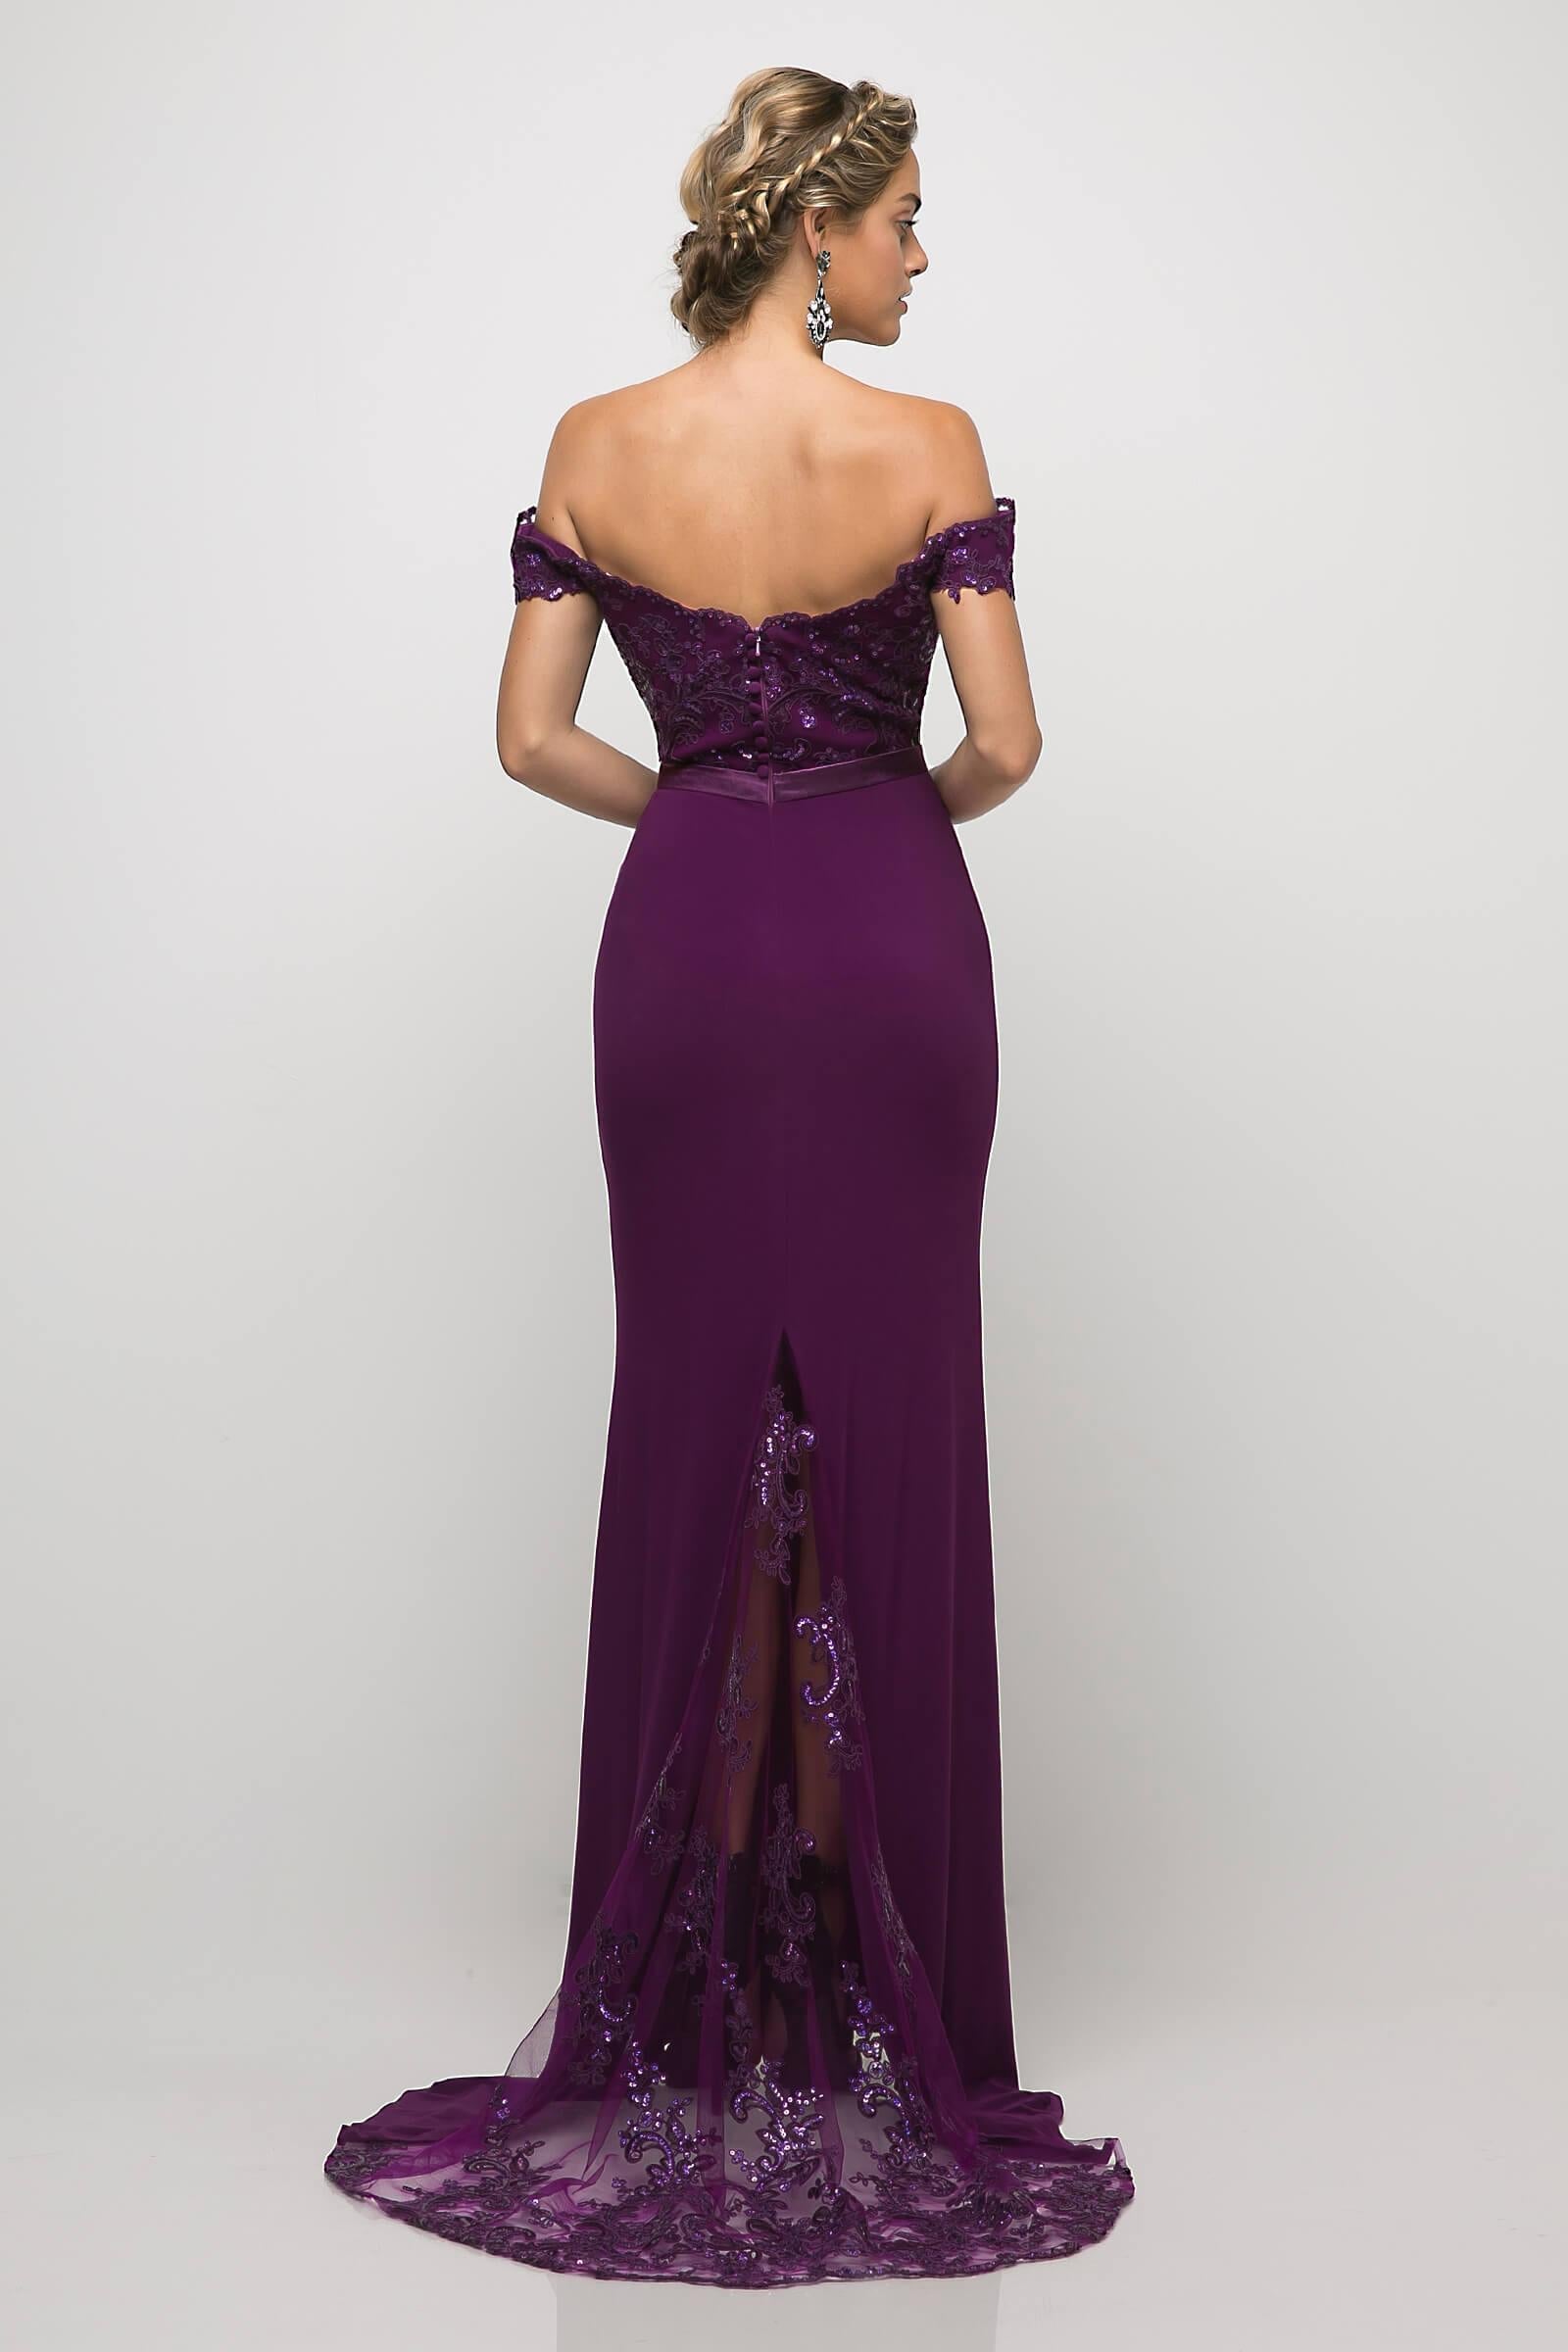 Off Shoulder Prom Dress Formal Gown - The Dress Outlet Cinderella Divine